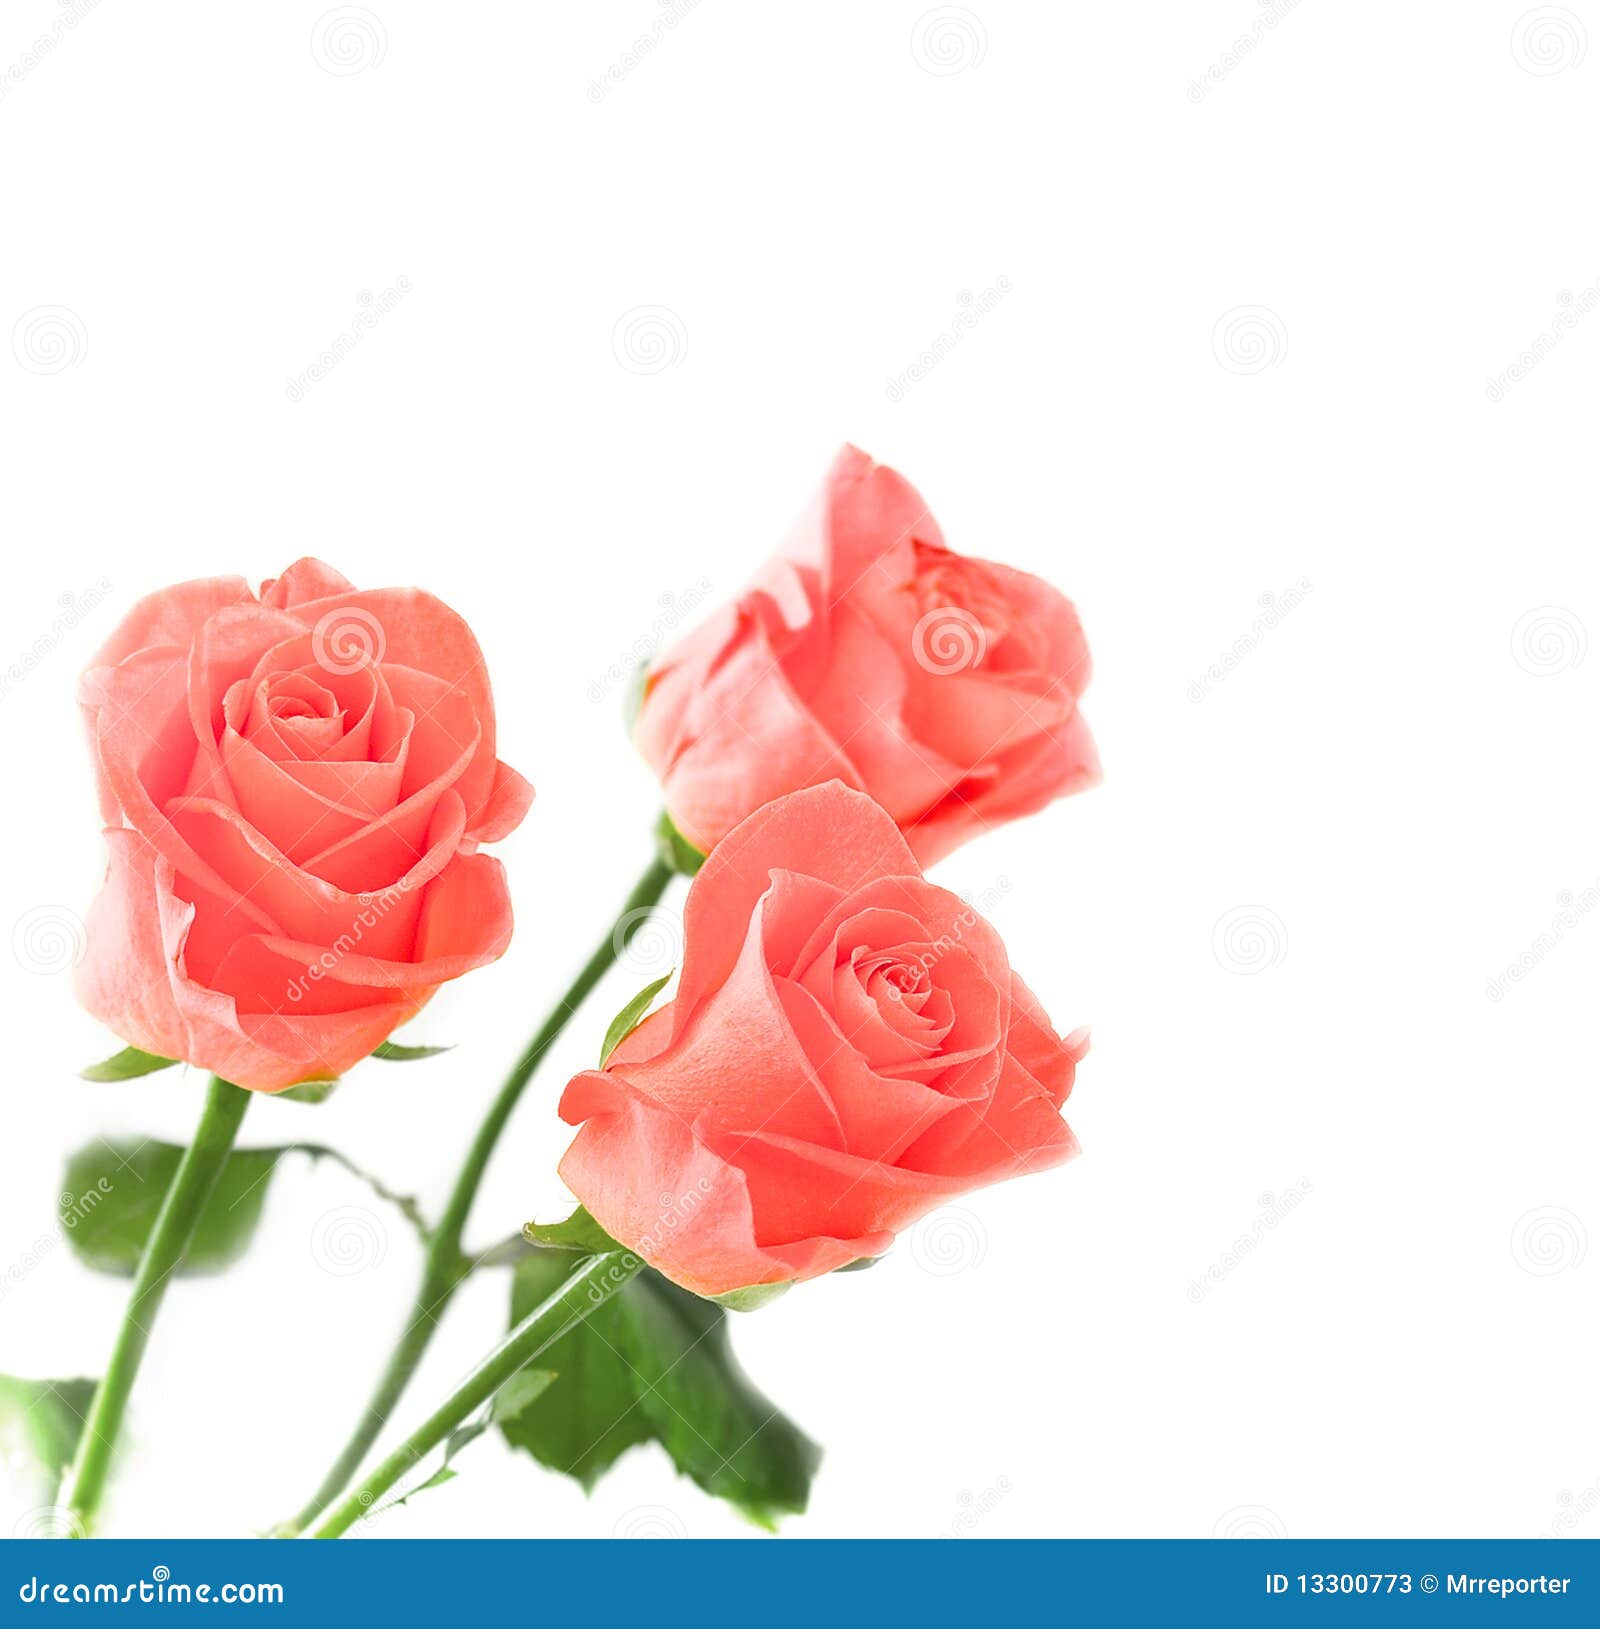 Australië Bevatten ondersteuning 3 rozen stock afbeelding. Image of decoratief, bloemen - 13300773